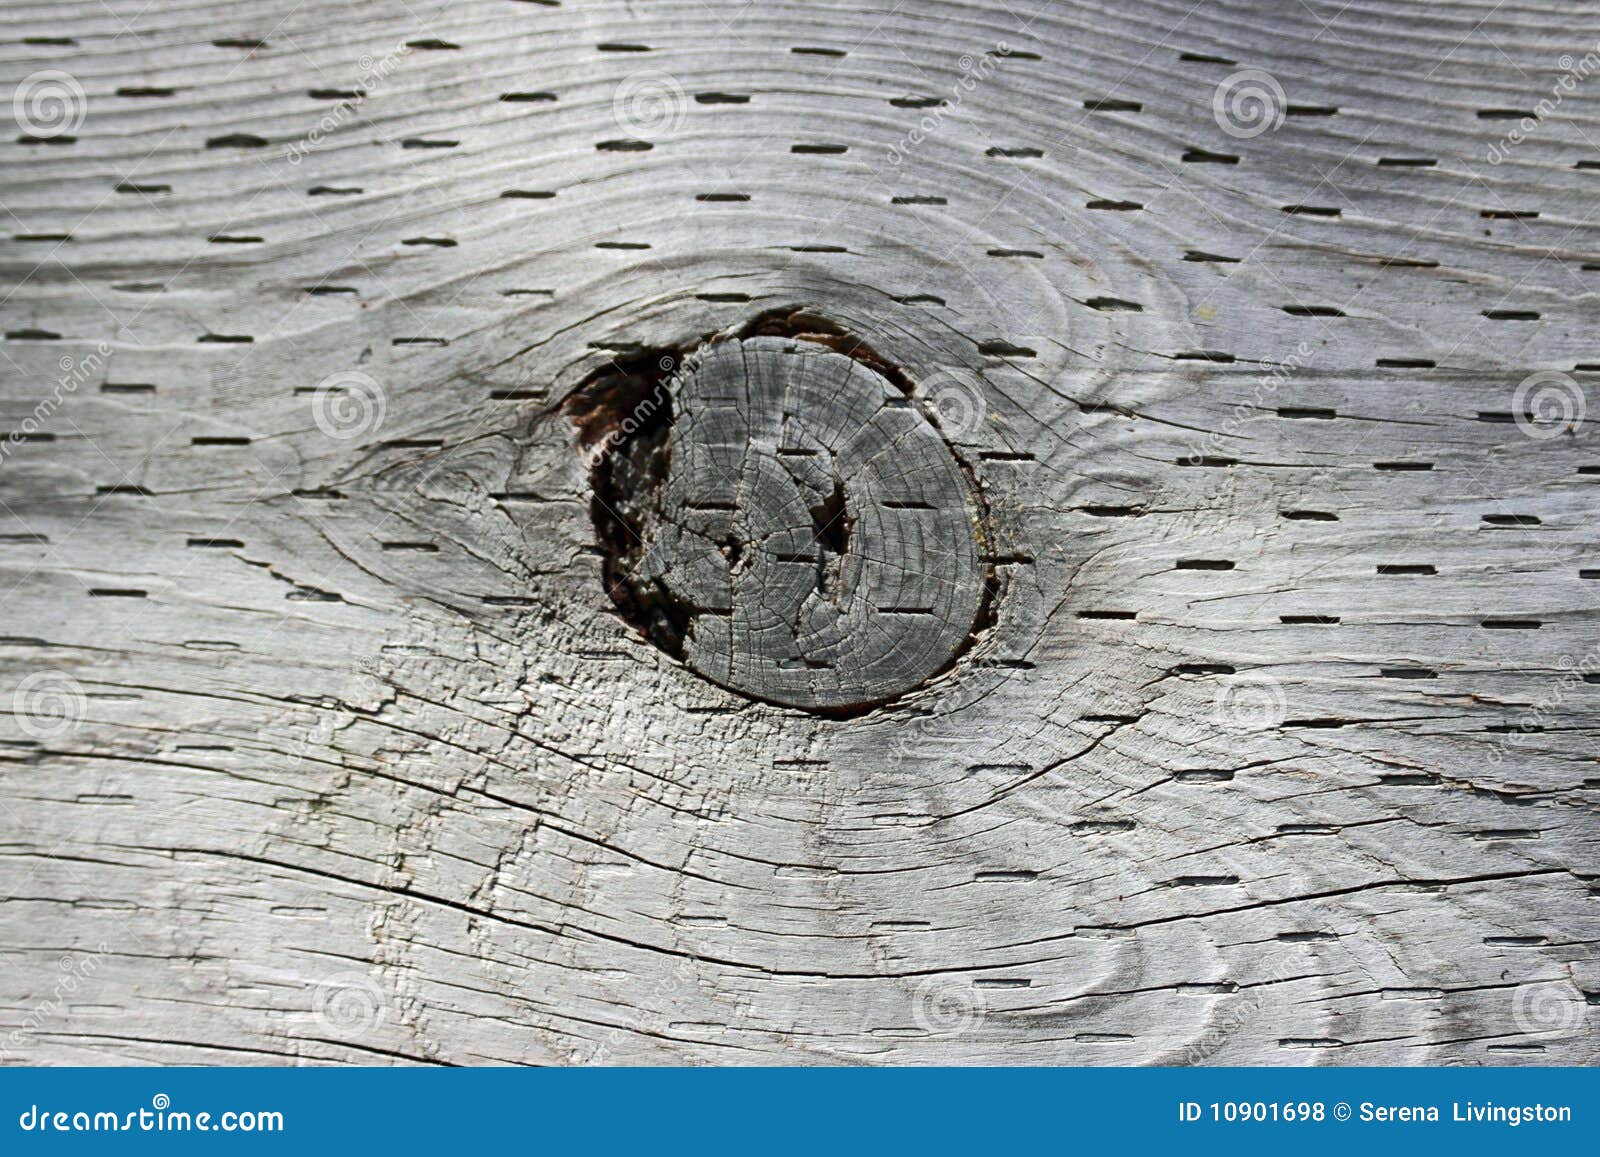 wood-knot-hole-10901698.jpg